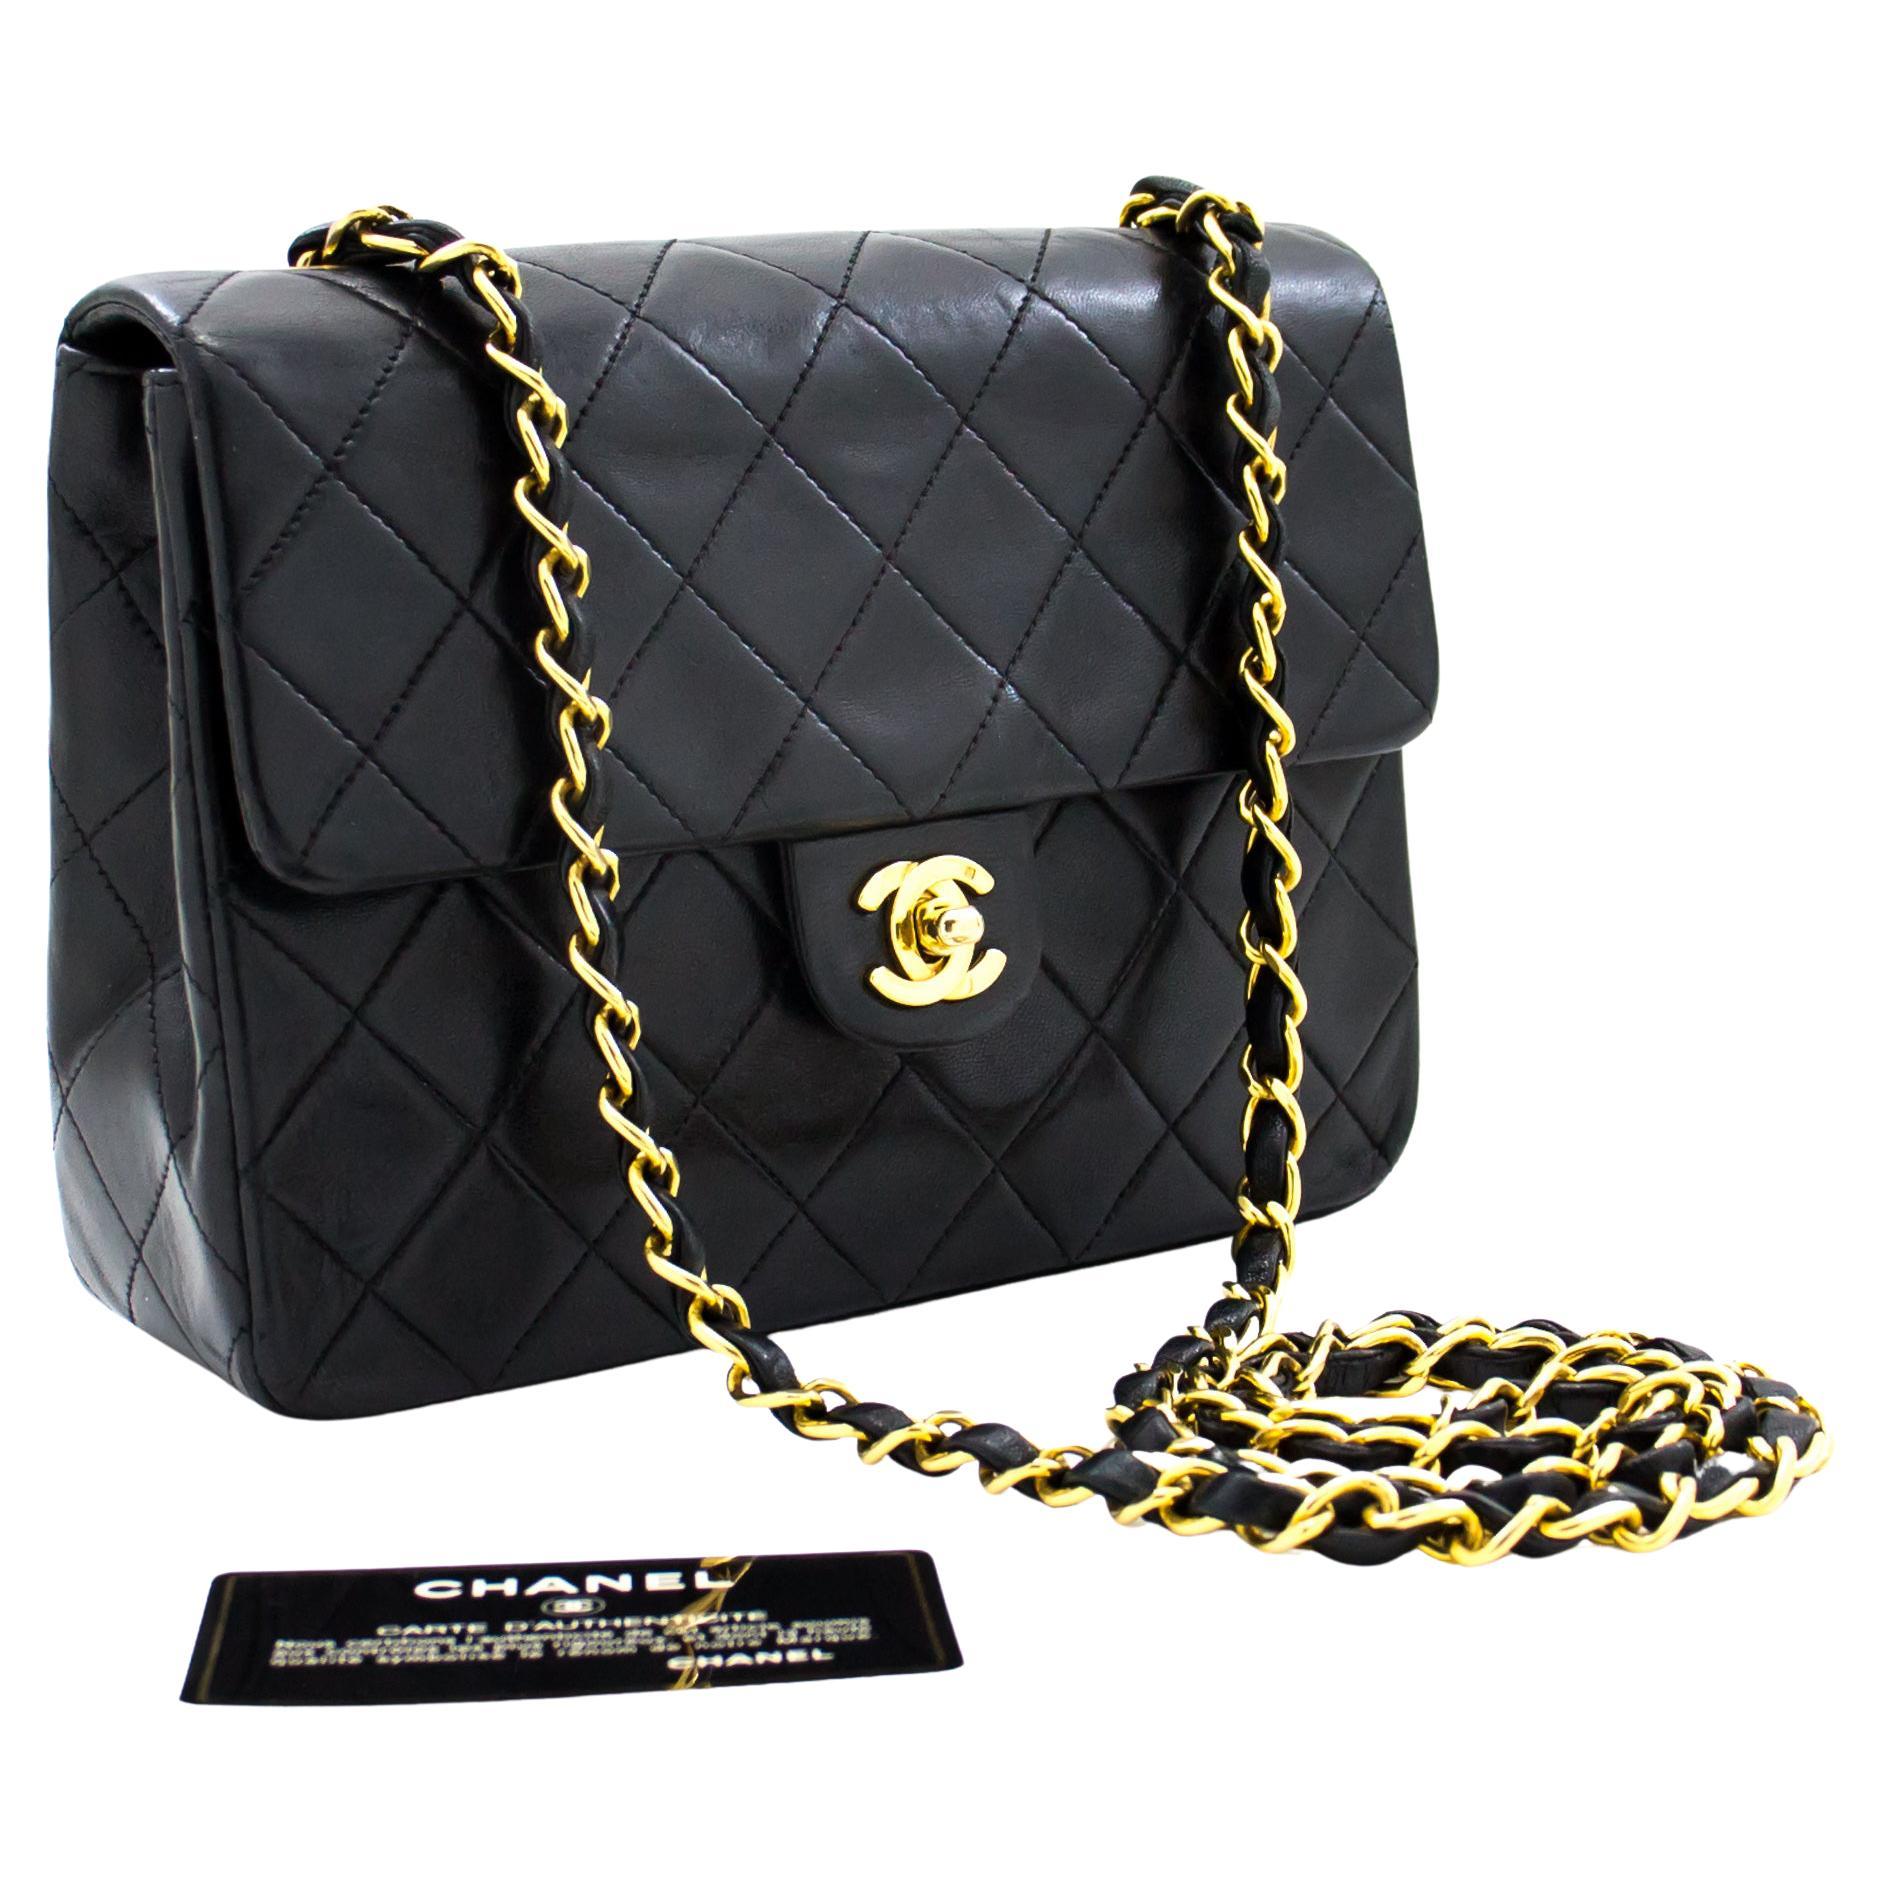 Dolce  Gabbana ziparound leather belt bag  Chanel Boy Shoulder bag  376531  ExtensionfmedShops